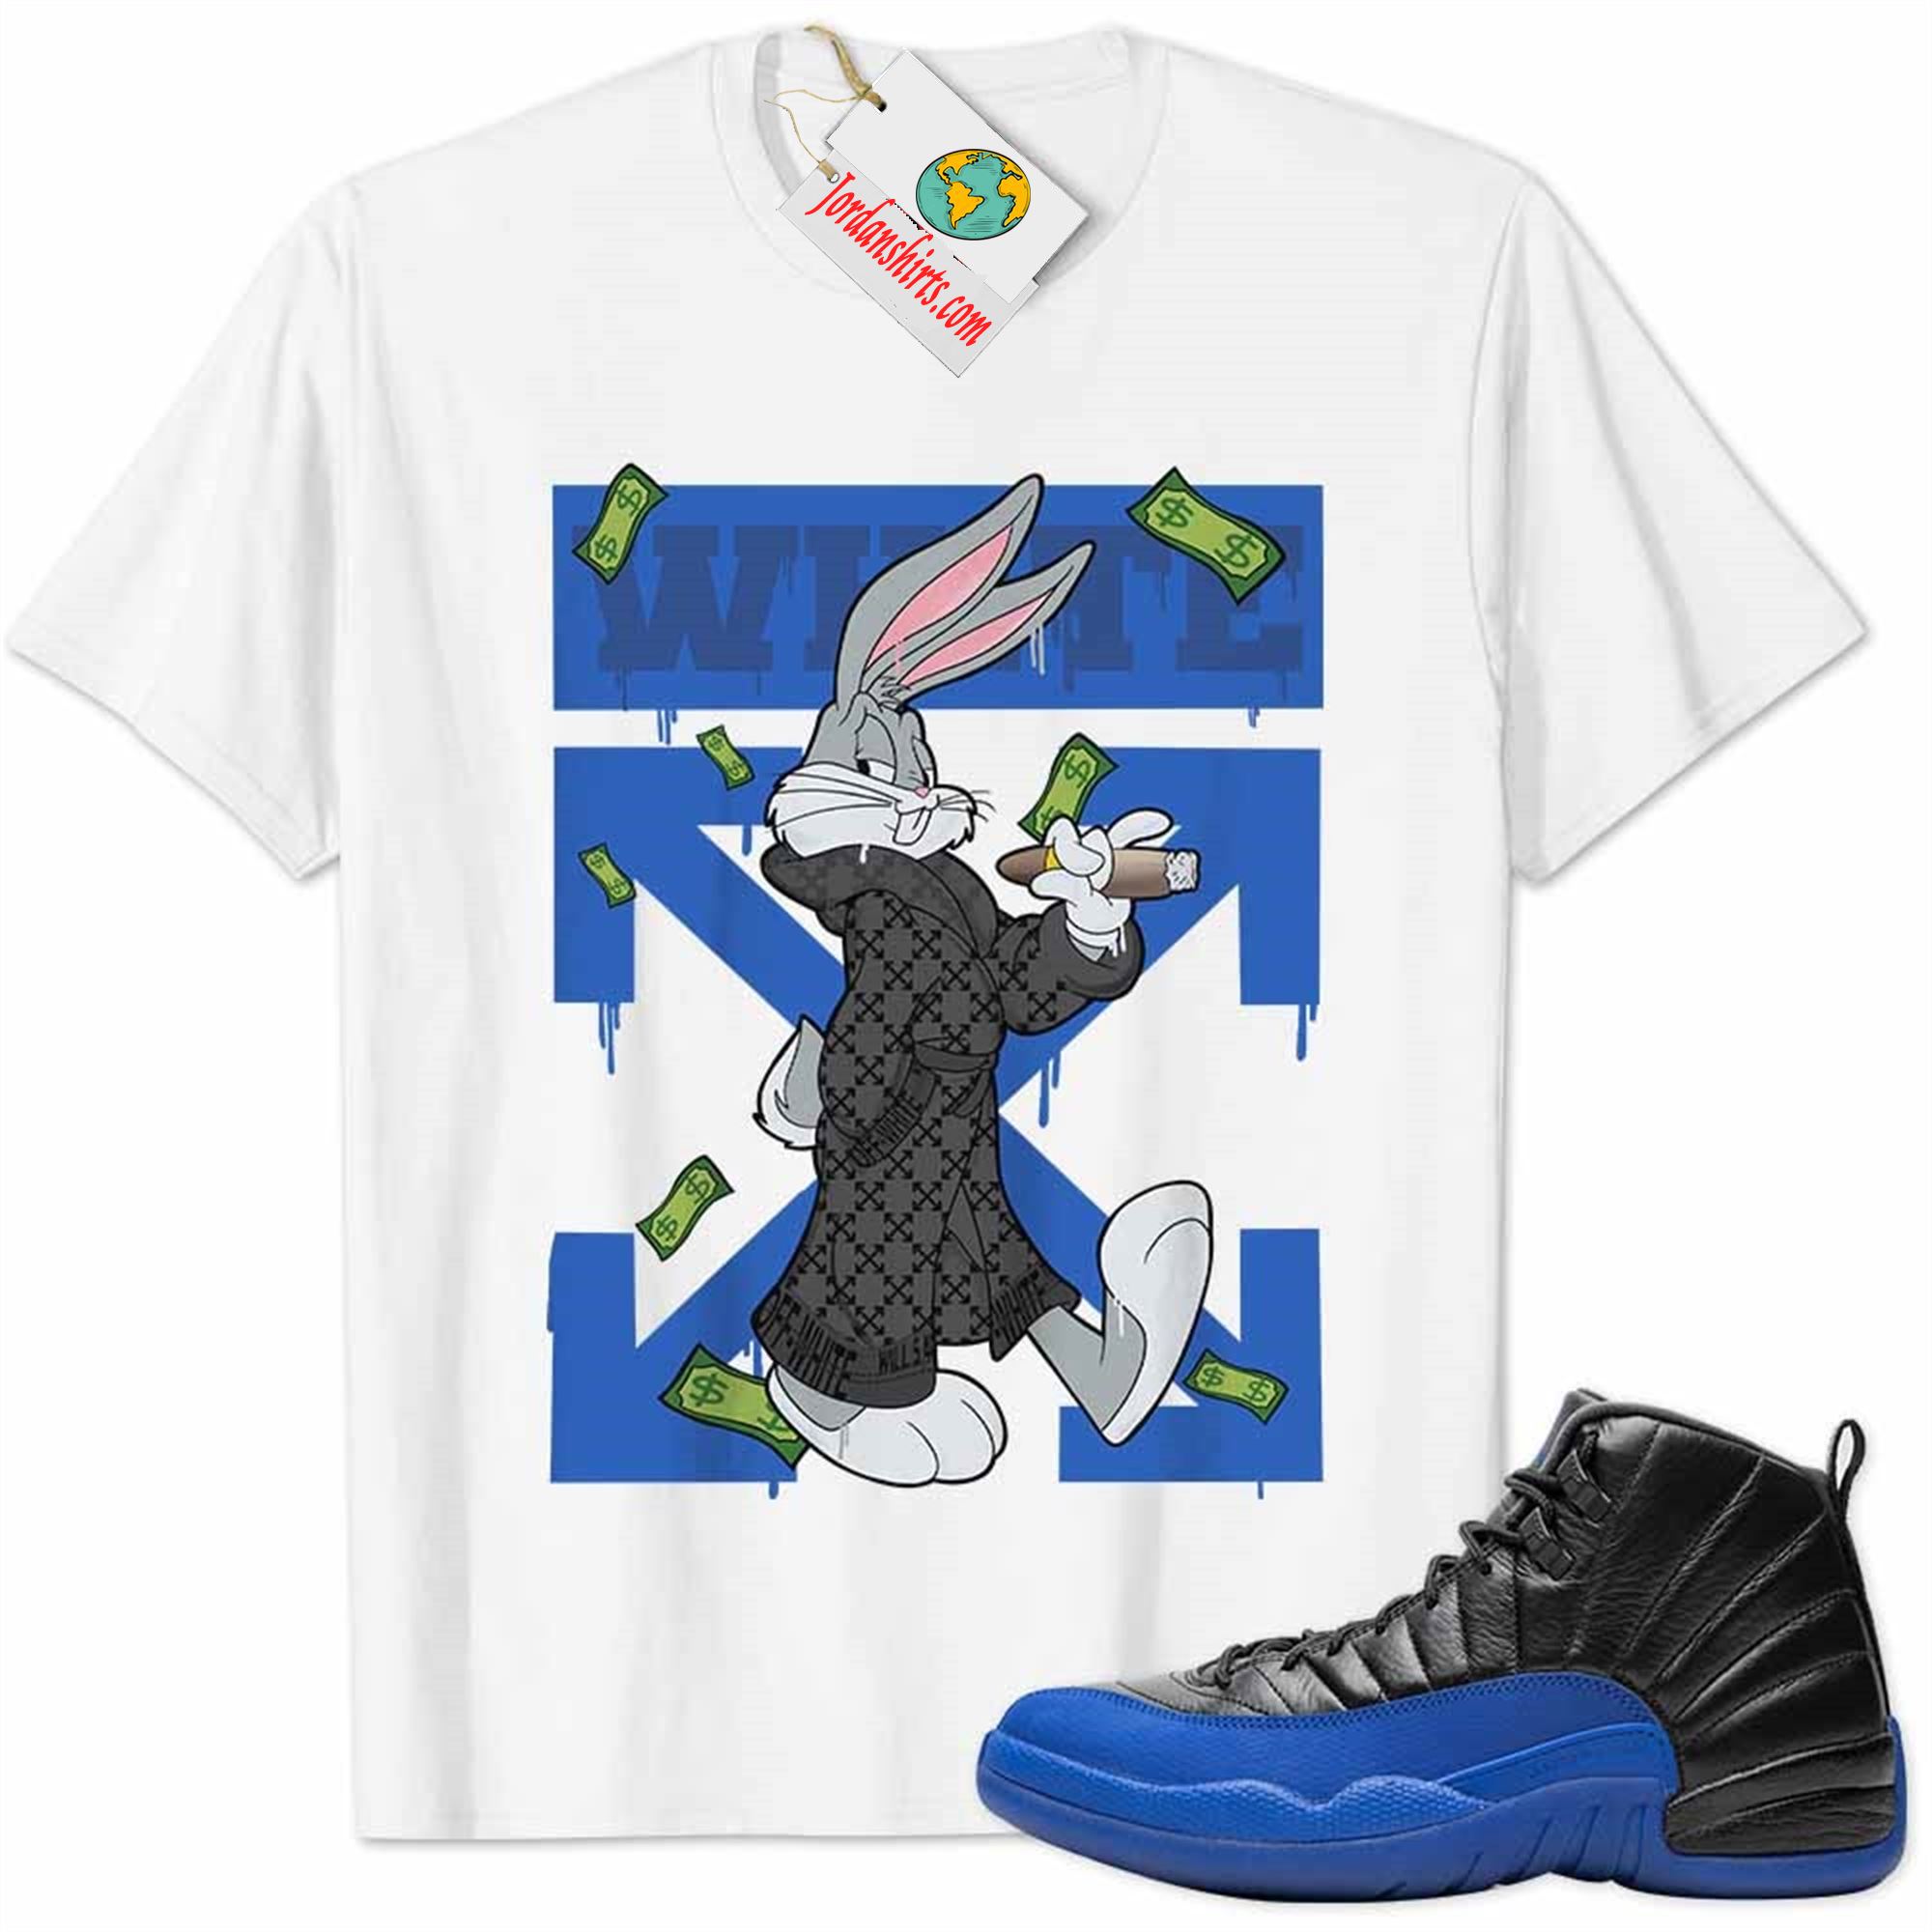 Jordan 12 Shirt, Jordan 12 Game Royal Shirt Bug Bunny Smokes Weed Money Falling White Full Size Up To 5xl